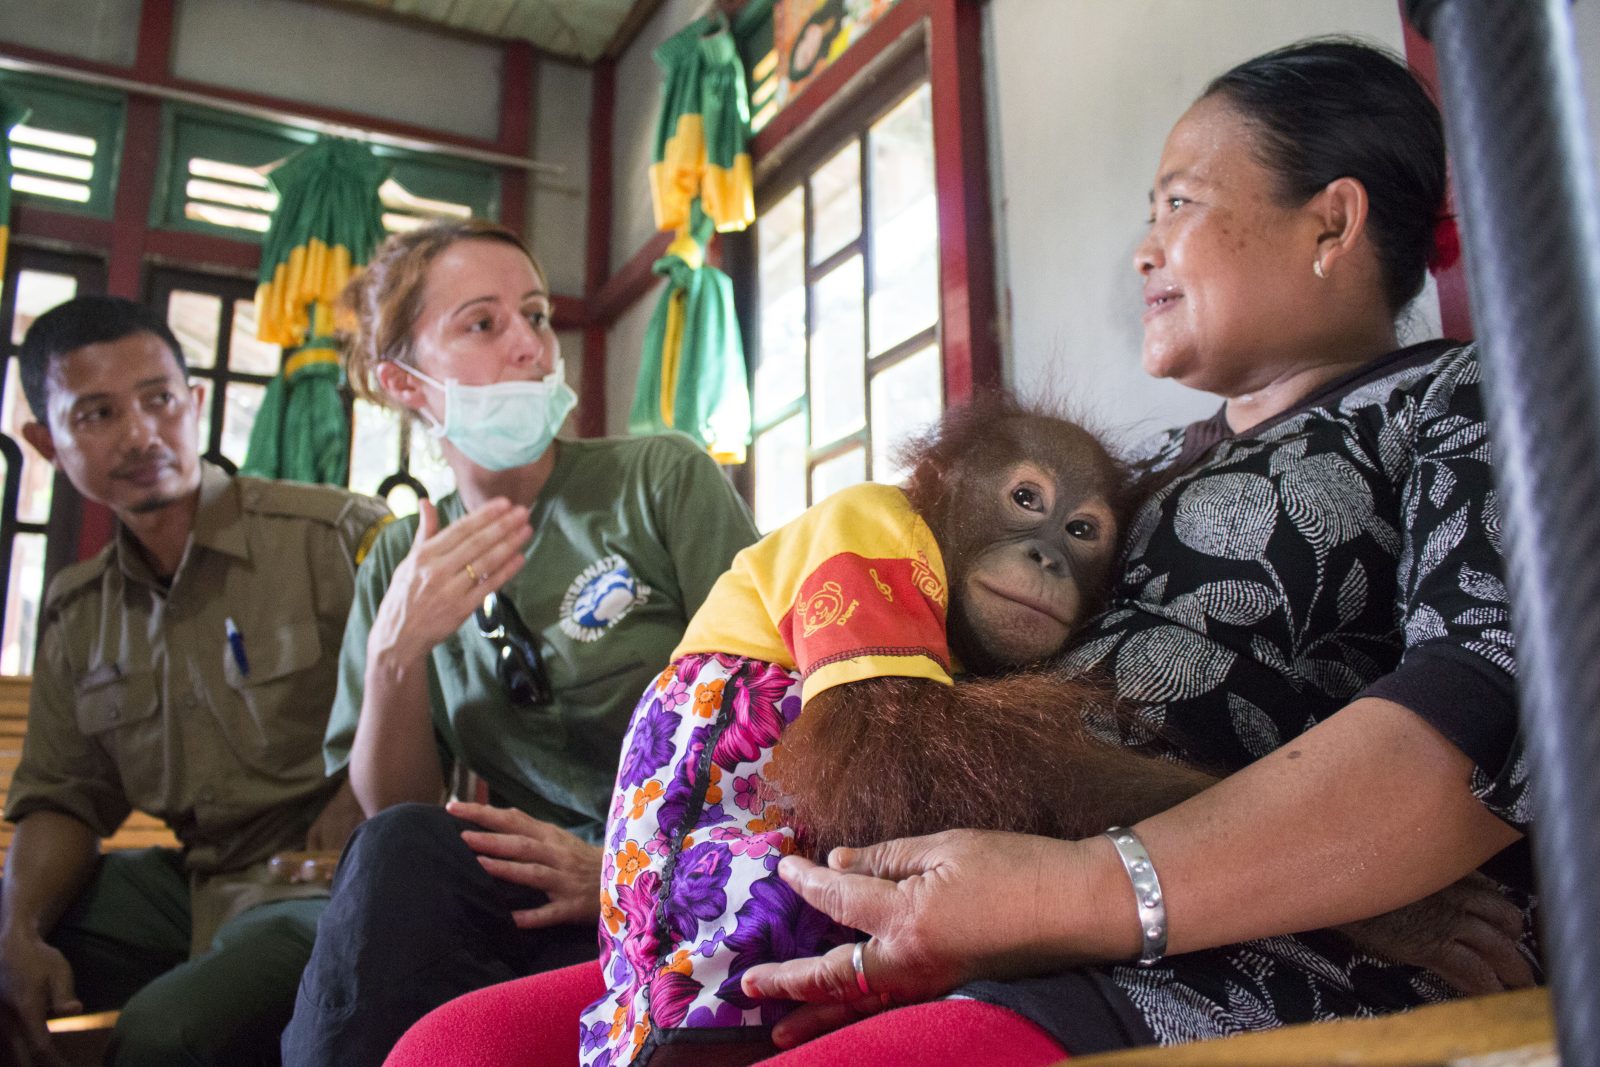 Sempat Menolak dan Minta Ganti Rugi, Warga Akhirnya Merelakan Orangutan Dievakuasi